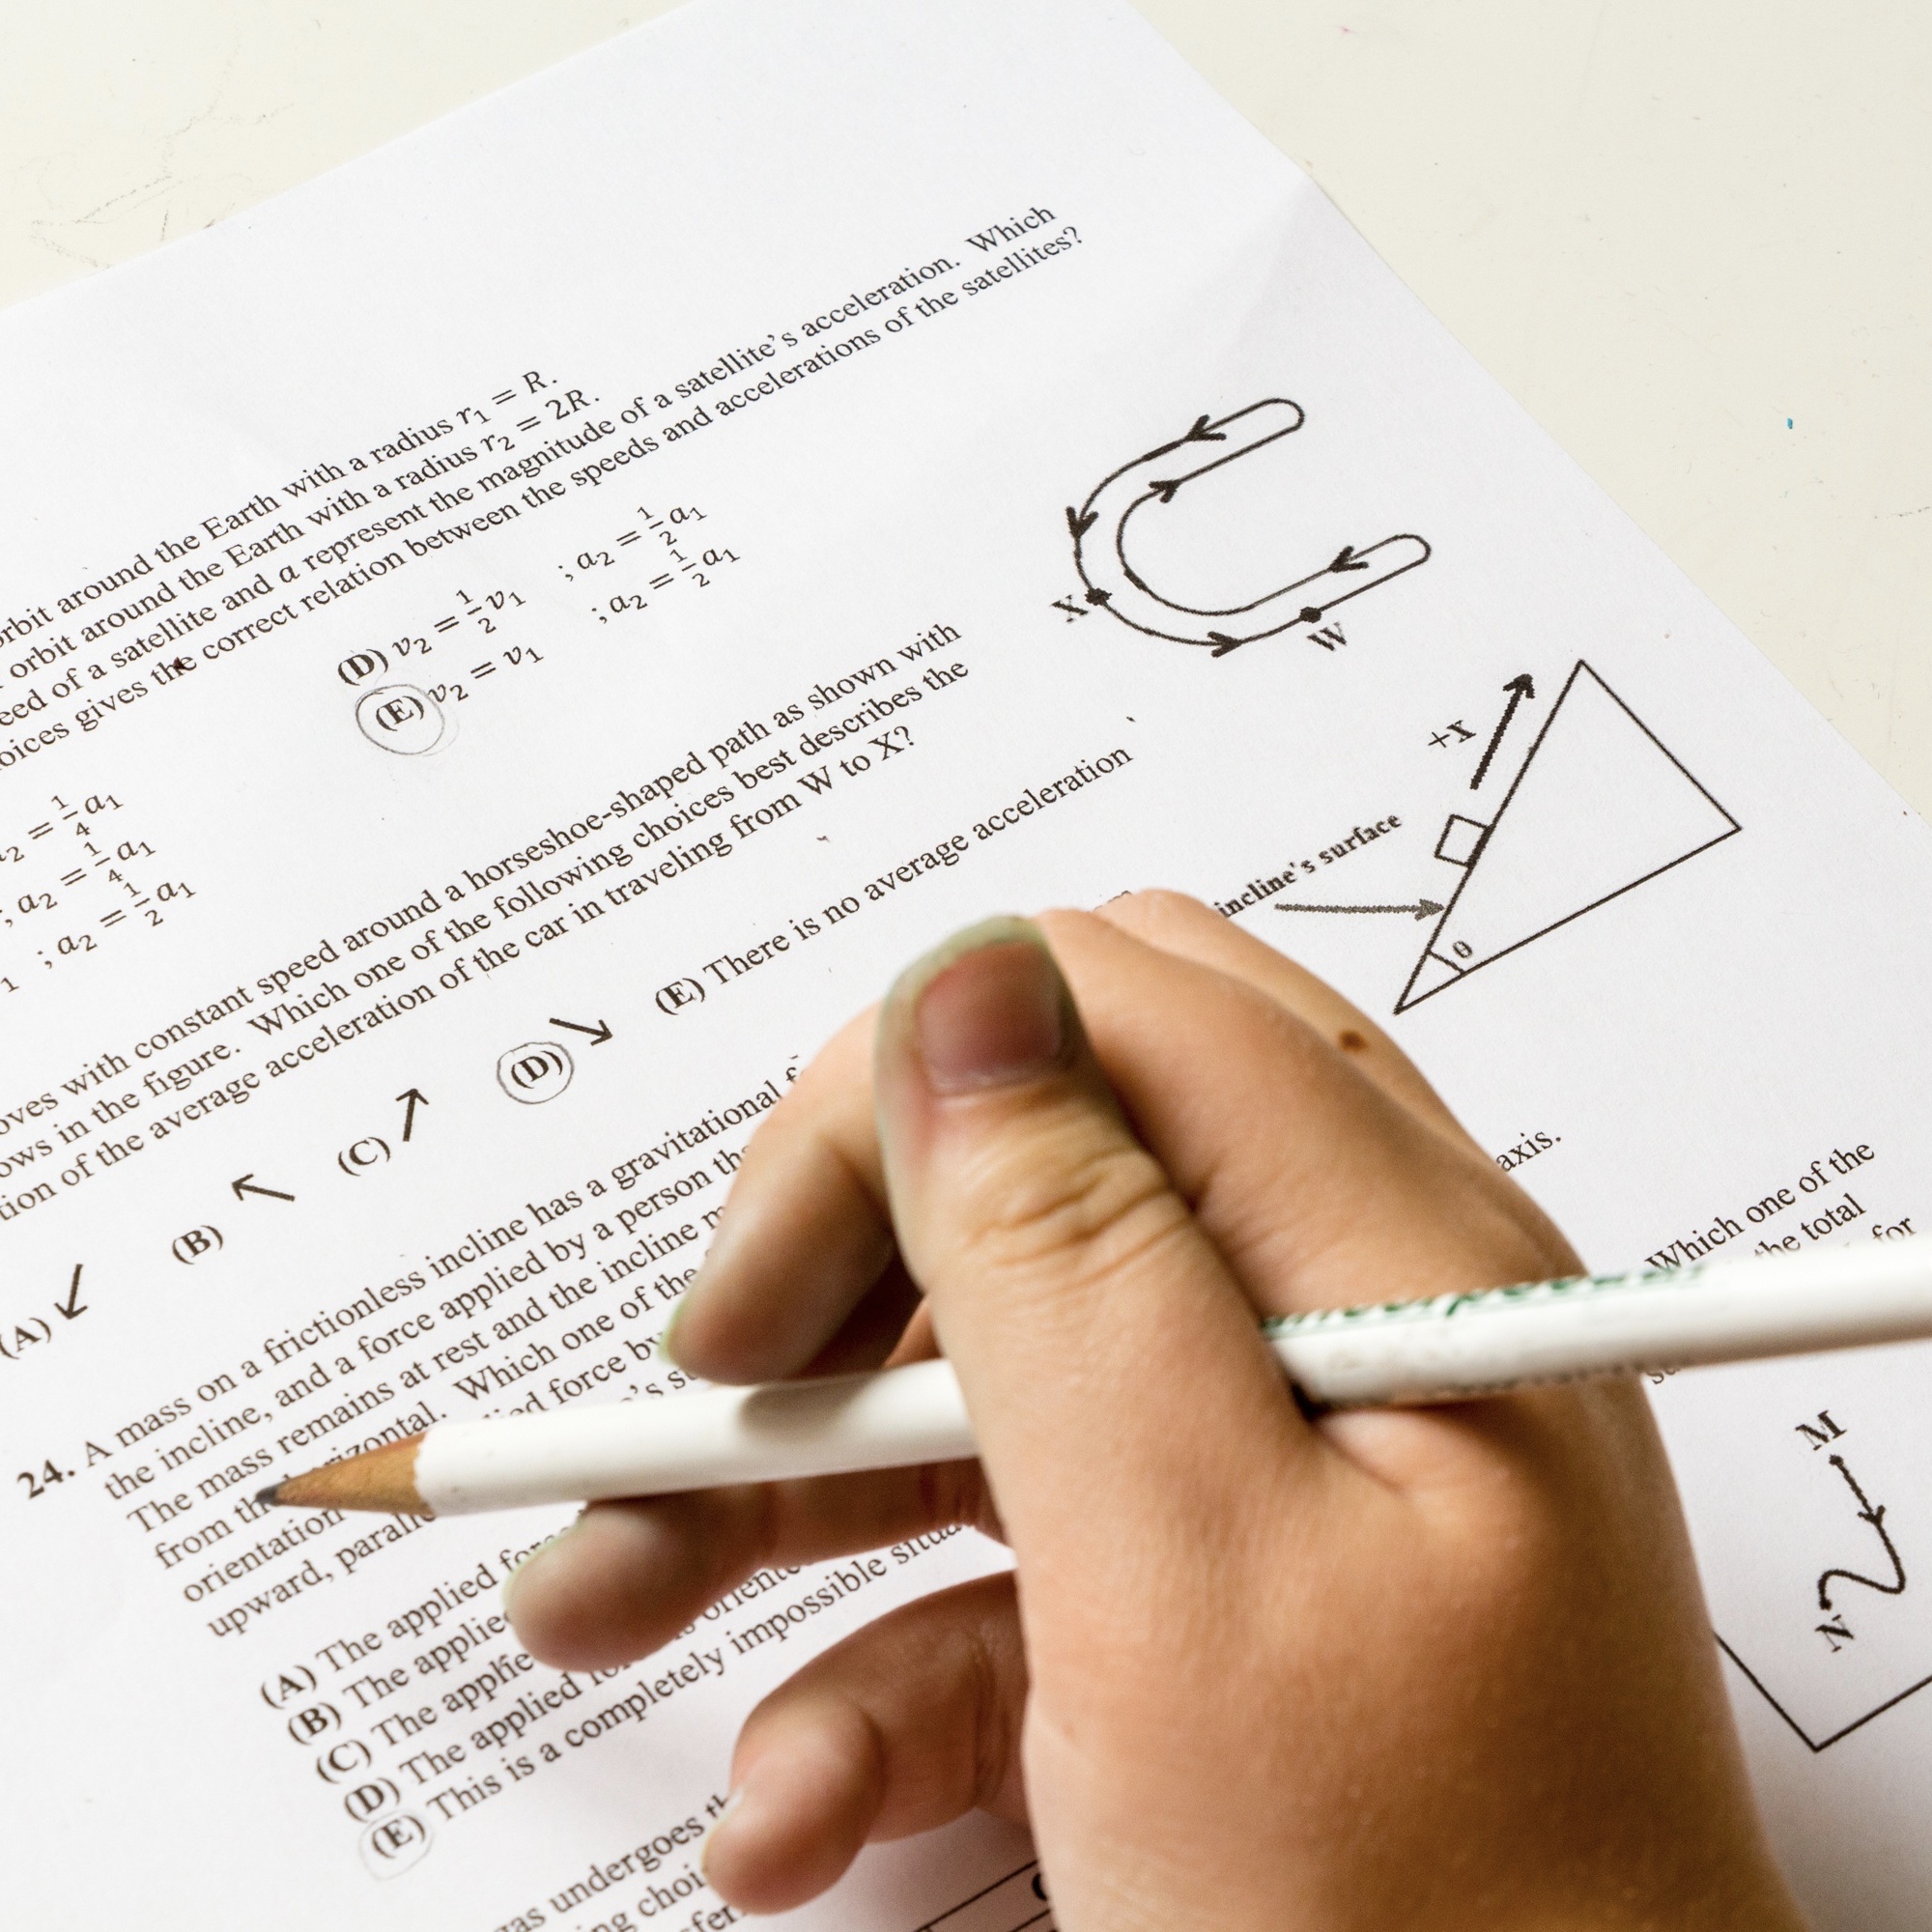 Foto: Hand mit Bleistift, die Prüfungsaufgaben löst (Symbolbild)